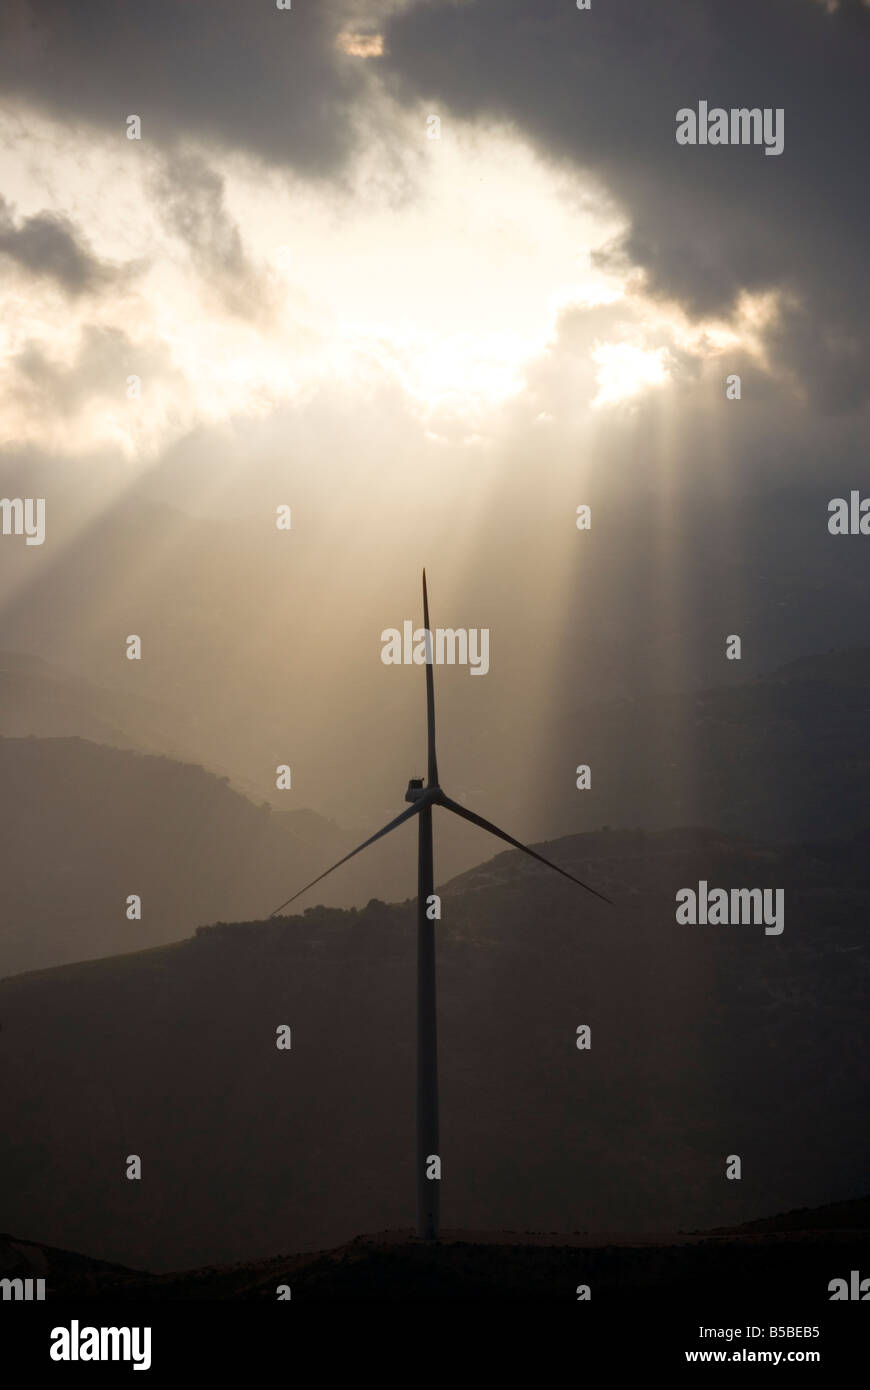 Les éoliennes qui produisent de l'énergie propre et durable, dans la Sierra Nevada de l'Andalousie, dans le sud de l'Espagne Banque D'Images